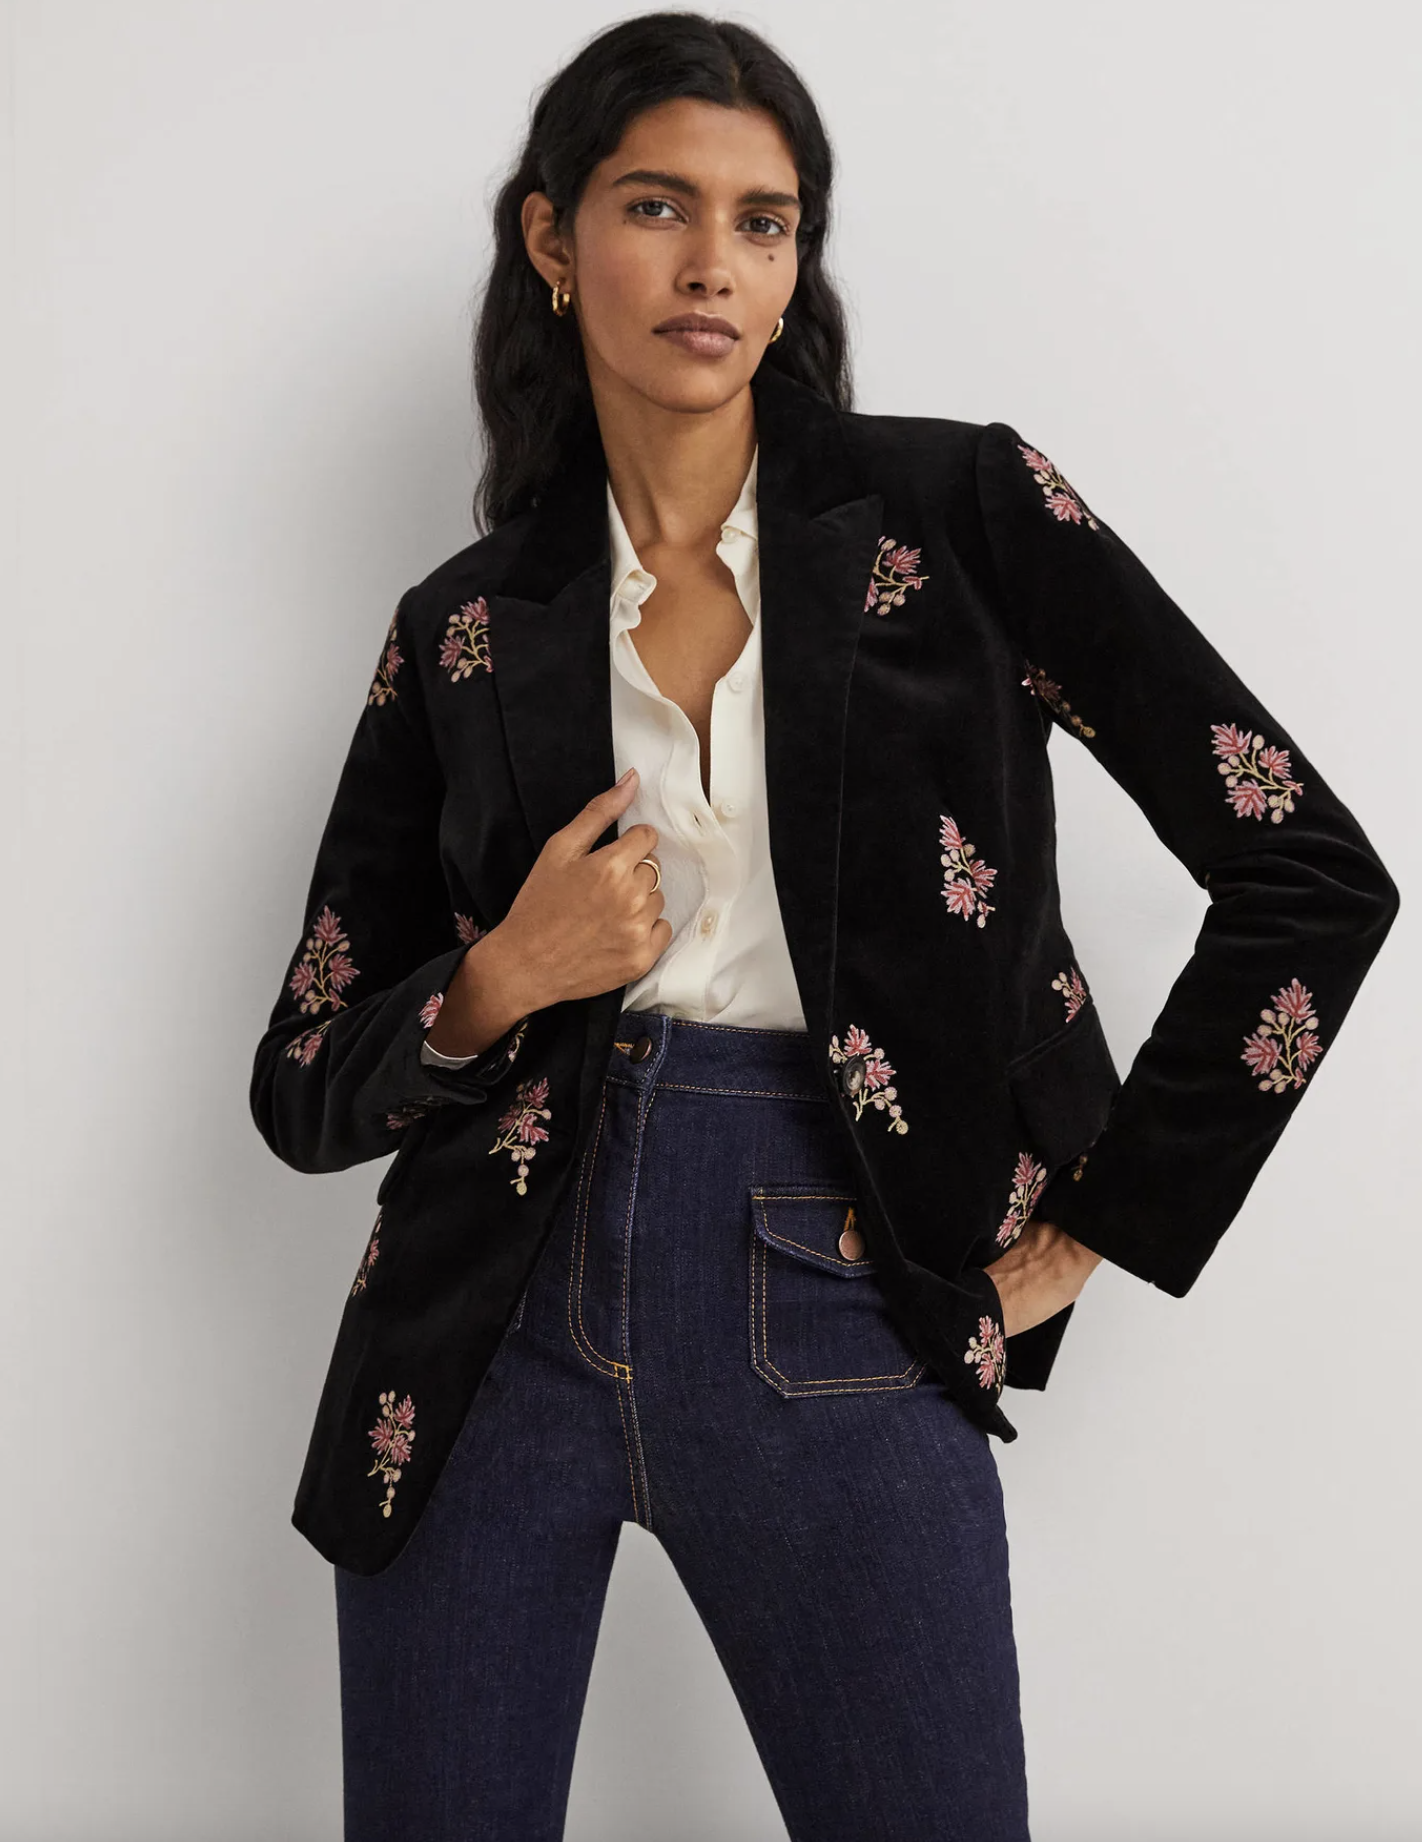 Mini Boden Velvet Coats & Jackets for Girls Sizes 2T-5T | Mercari